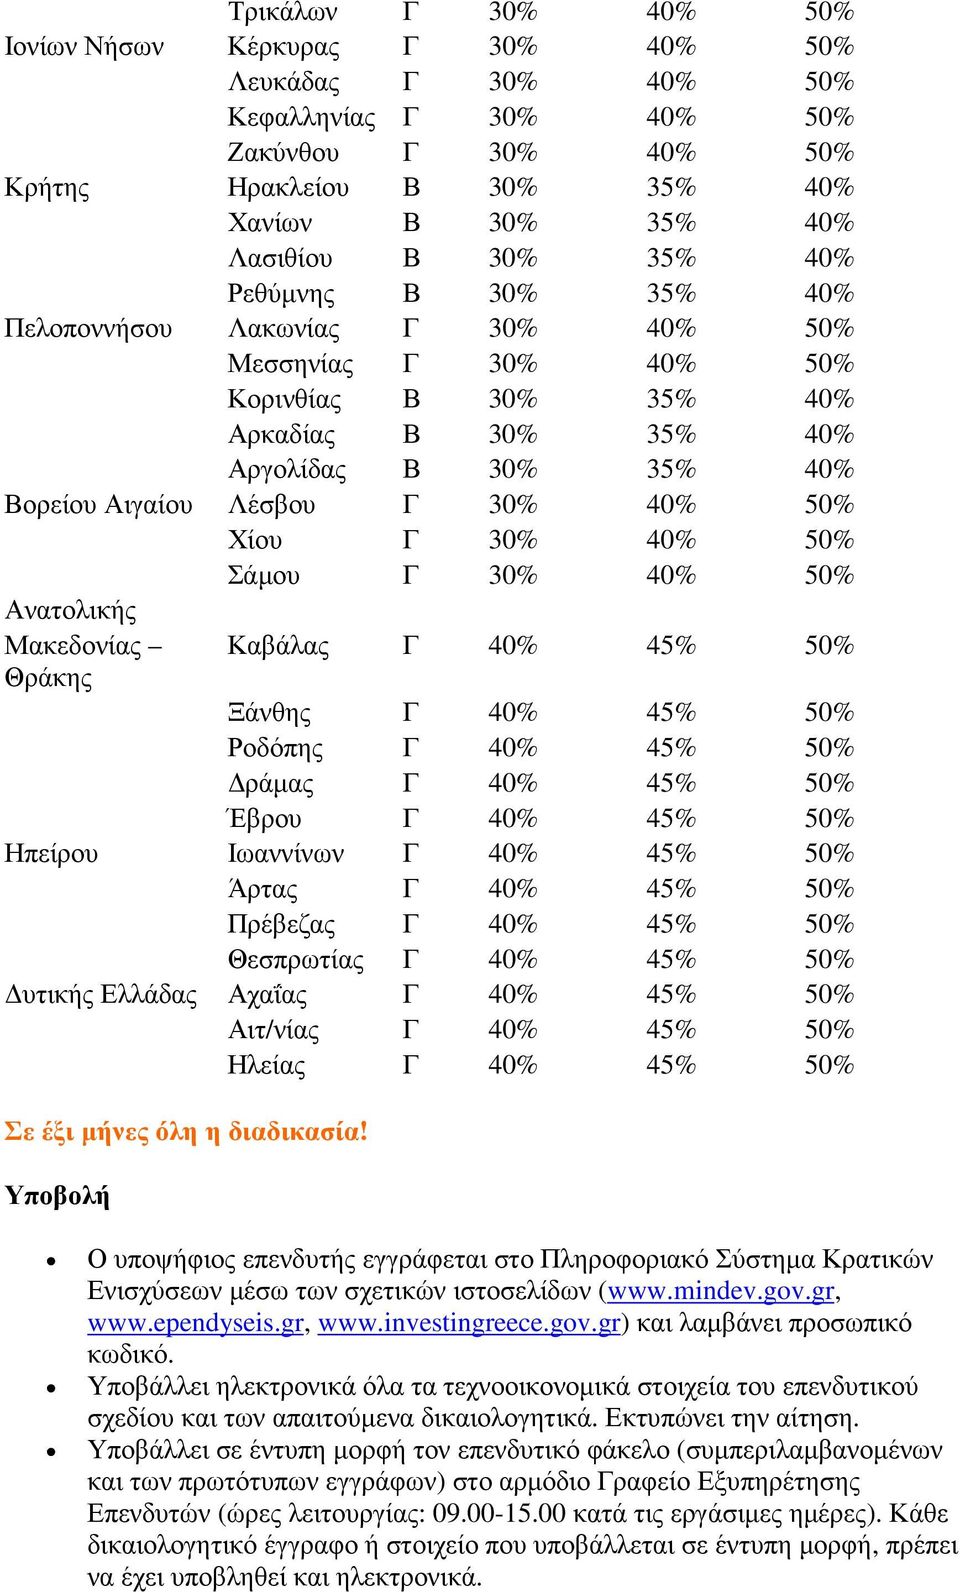 Χίου Γ 30% 40% 50% Σάµου Γ 30% 40% 50% Ανατολικής Μακεδονίας Θράκης Καβάλας Γ 40% 45% 50% Ξάνθης Γ 40% 45% 50% Ροδόπης Γ 40% 45% 50% ράµας Γ 40% 45% 50% Έβρου Γ 40% 45% 50% Ηπείρου Ιωαννίνων Γ 40%